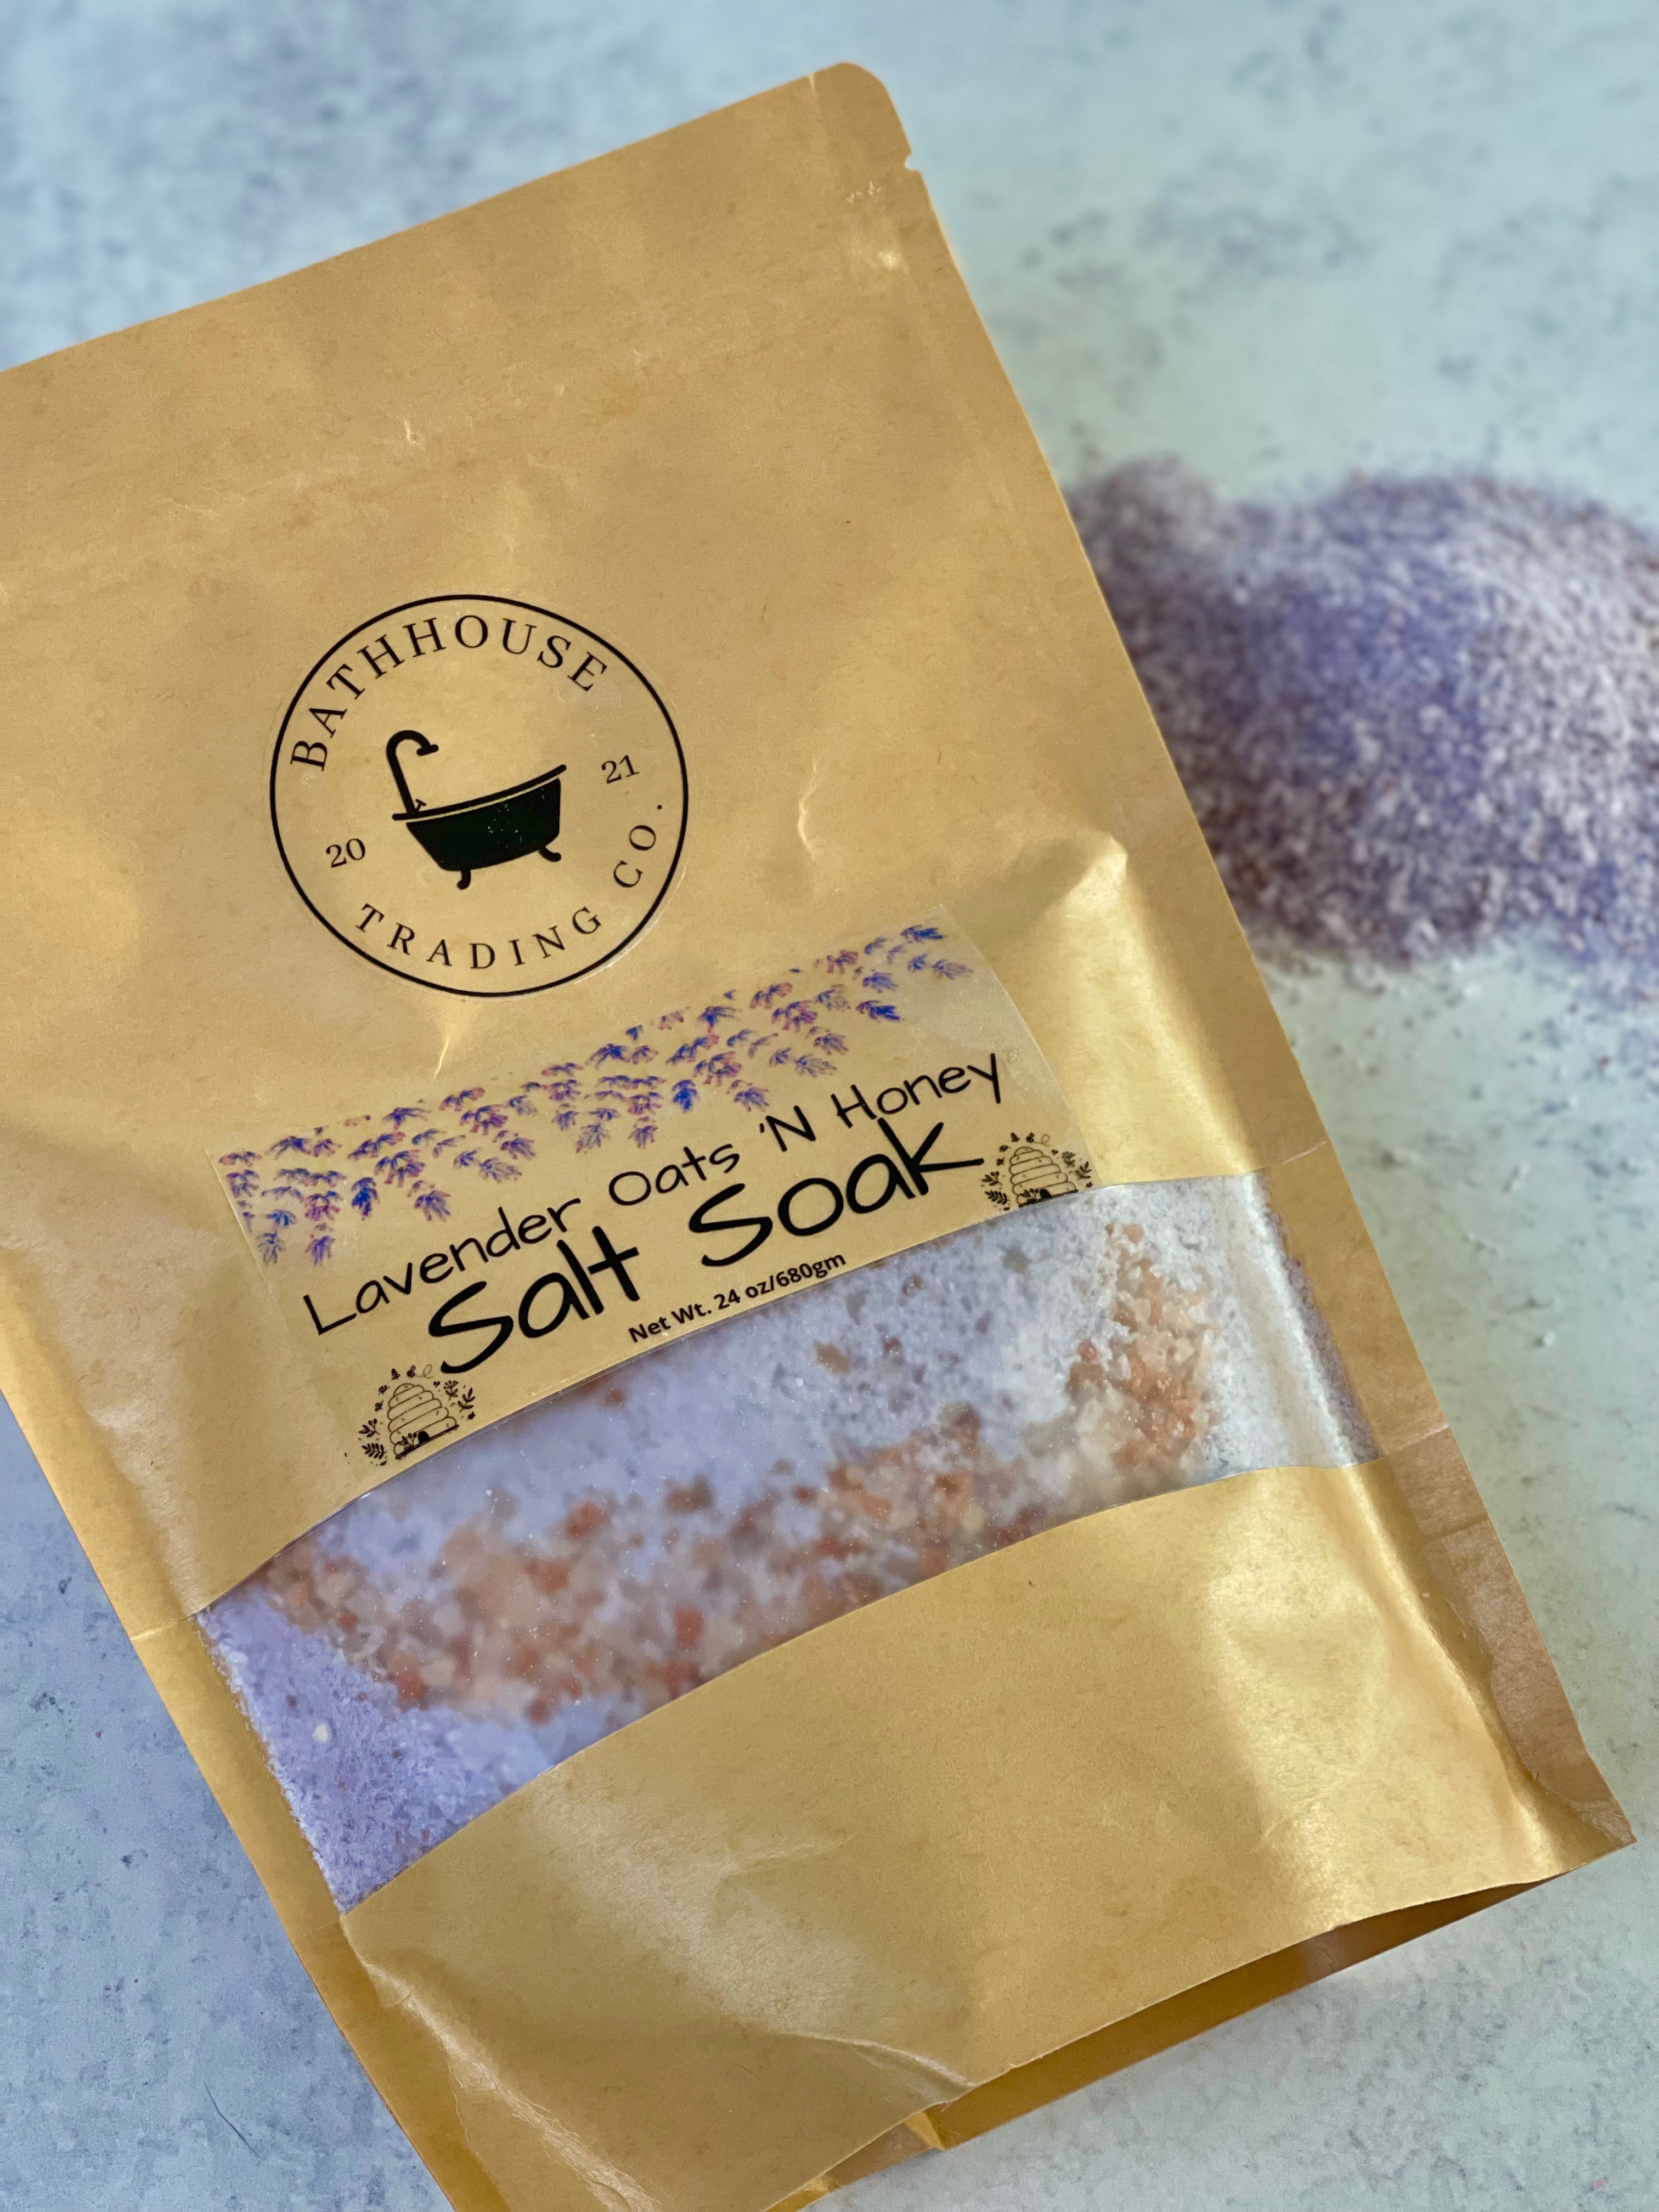 Lavender Oats 'N Honey Salt Soak Bath Additives Bathhouse Trading Company 